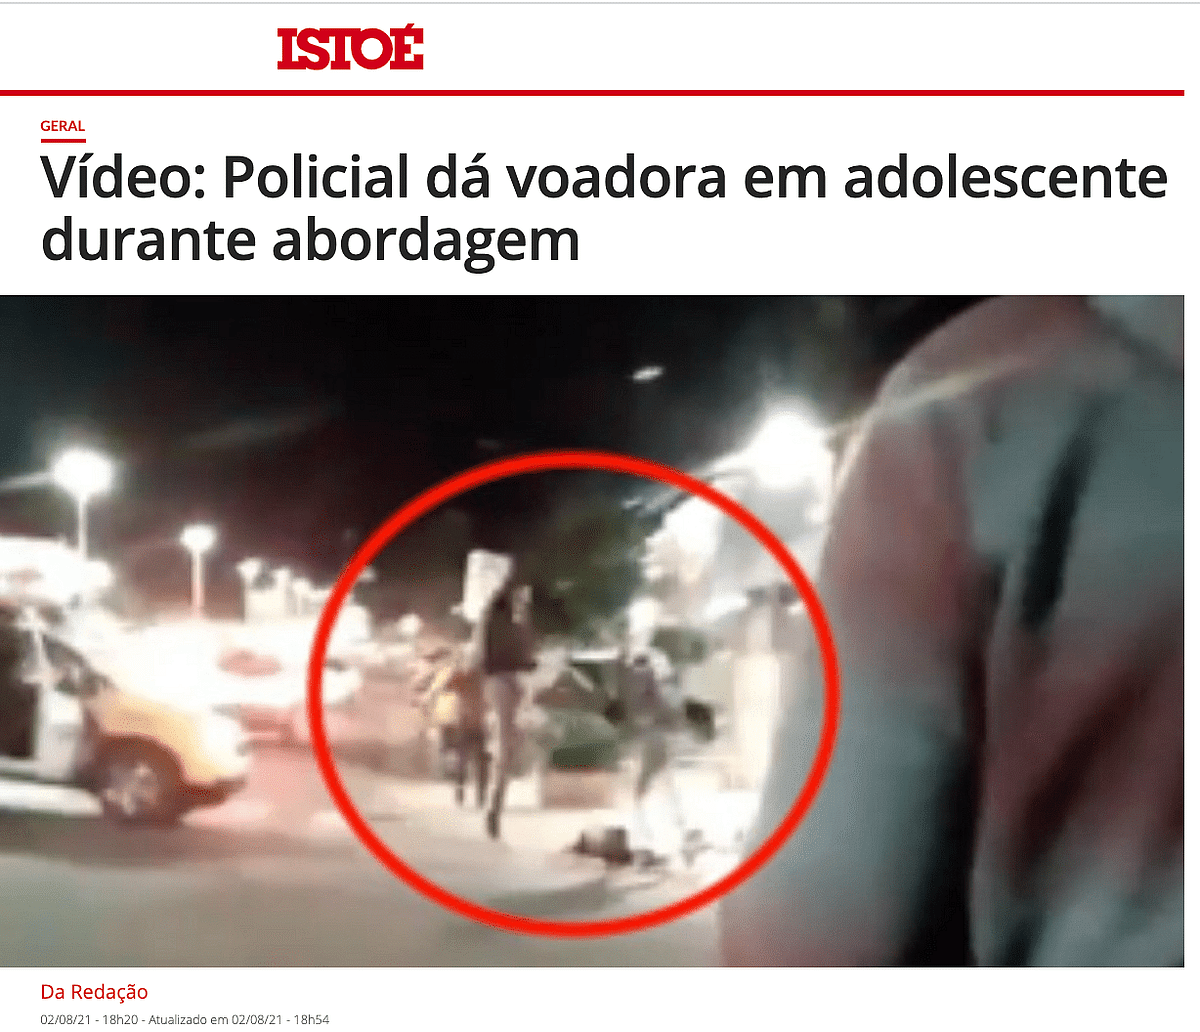 हमने पाया कि वीडियो ब्राजील के पेरोला का है, जहां पुलिस अधिकारी एक 17 साल के लड़के का पीछा कर रहे थे.